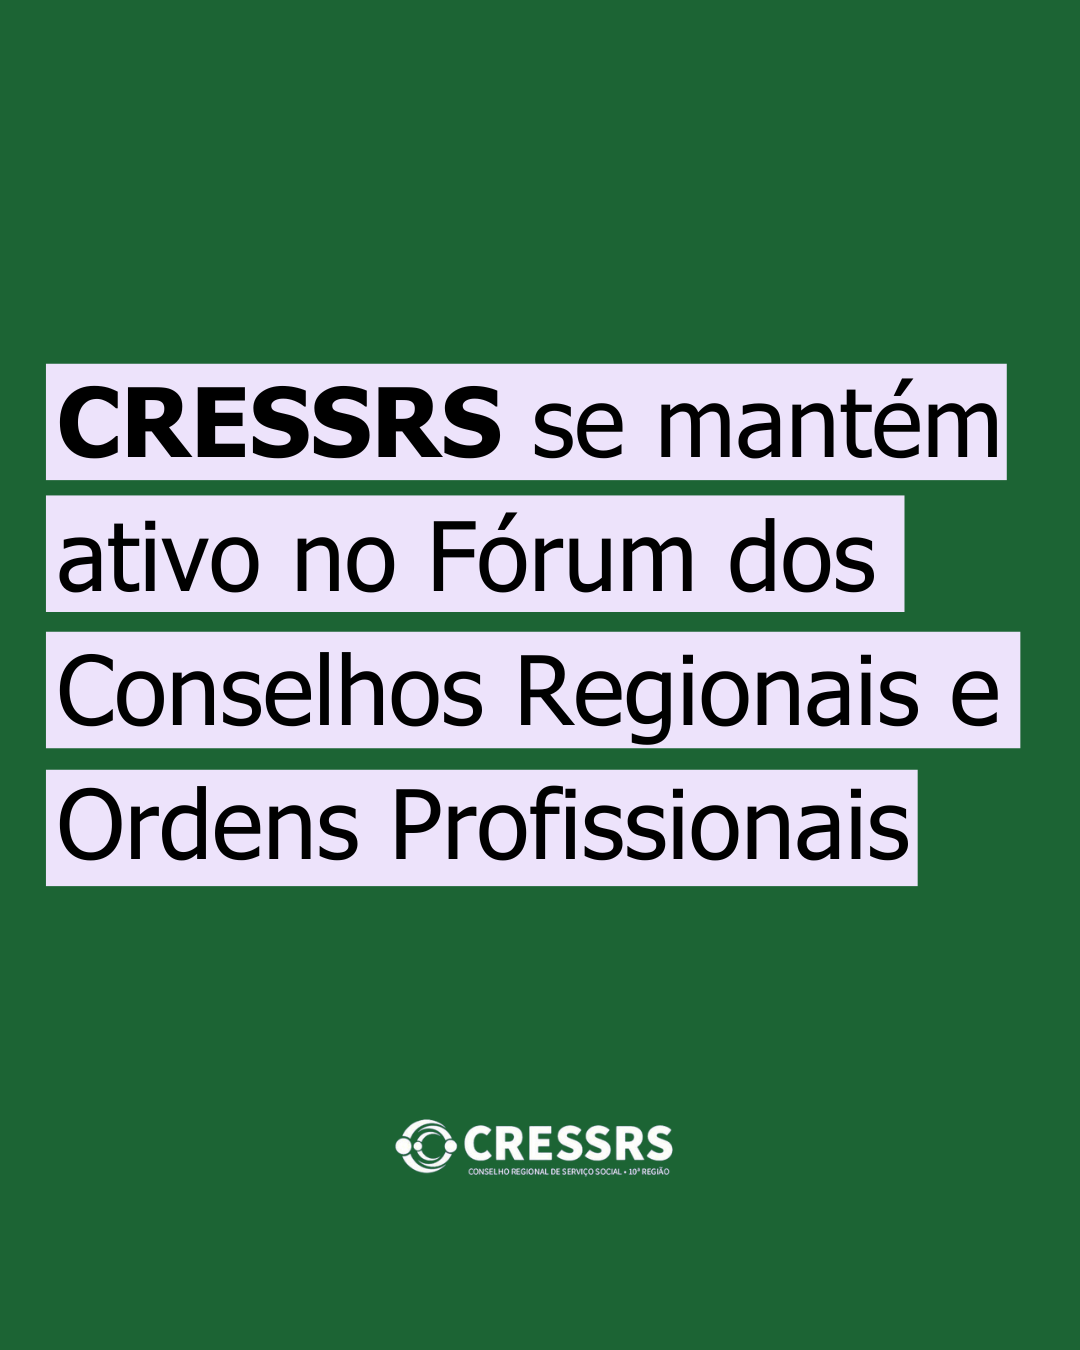 🎙️ - Conselho Regional de Serviço Social - CRESS 10ª Região